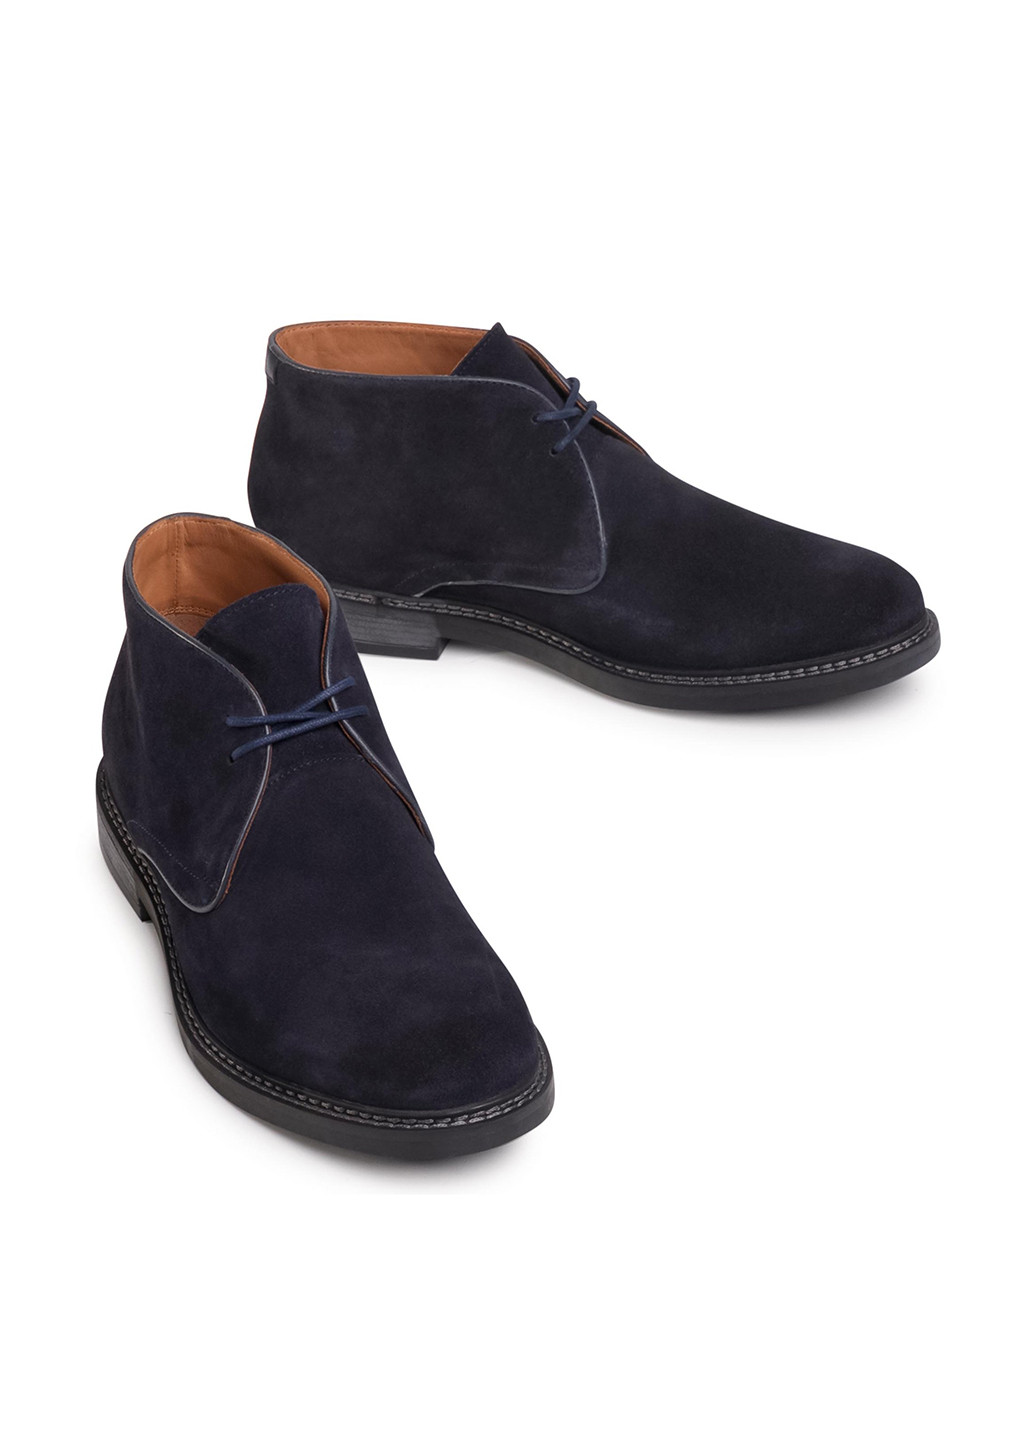 Темно-синие осенние черевики gino rossi mi08-c641-633-07 дезерты Gino Rossi